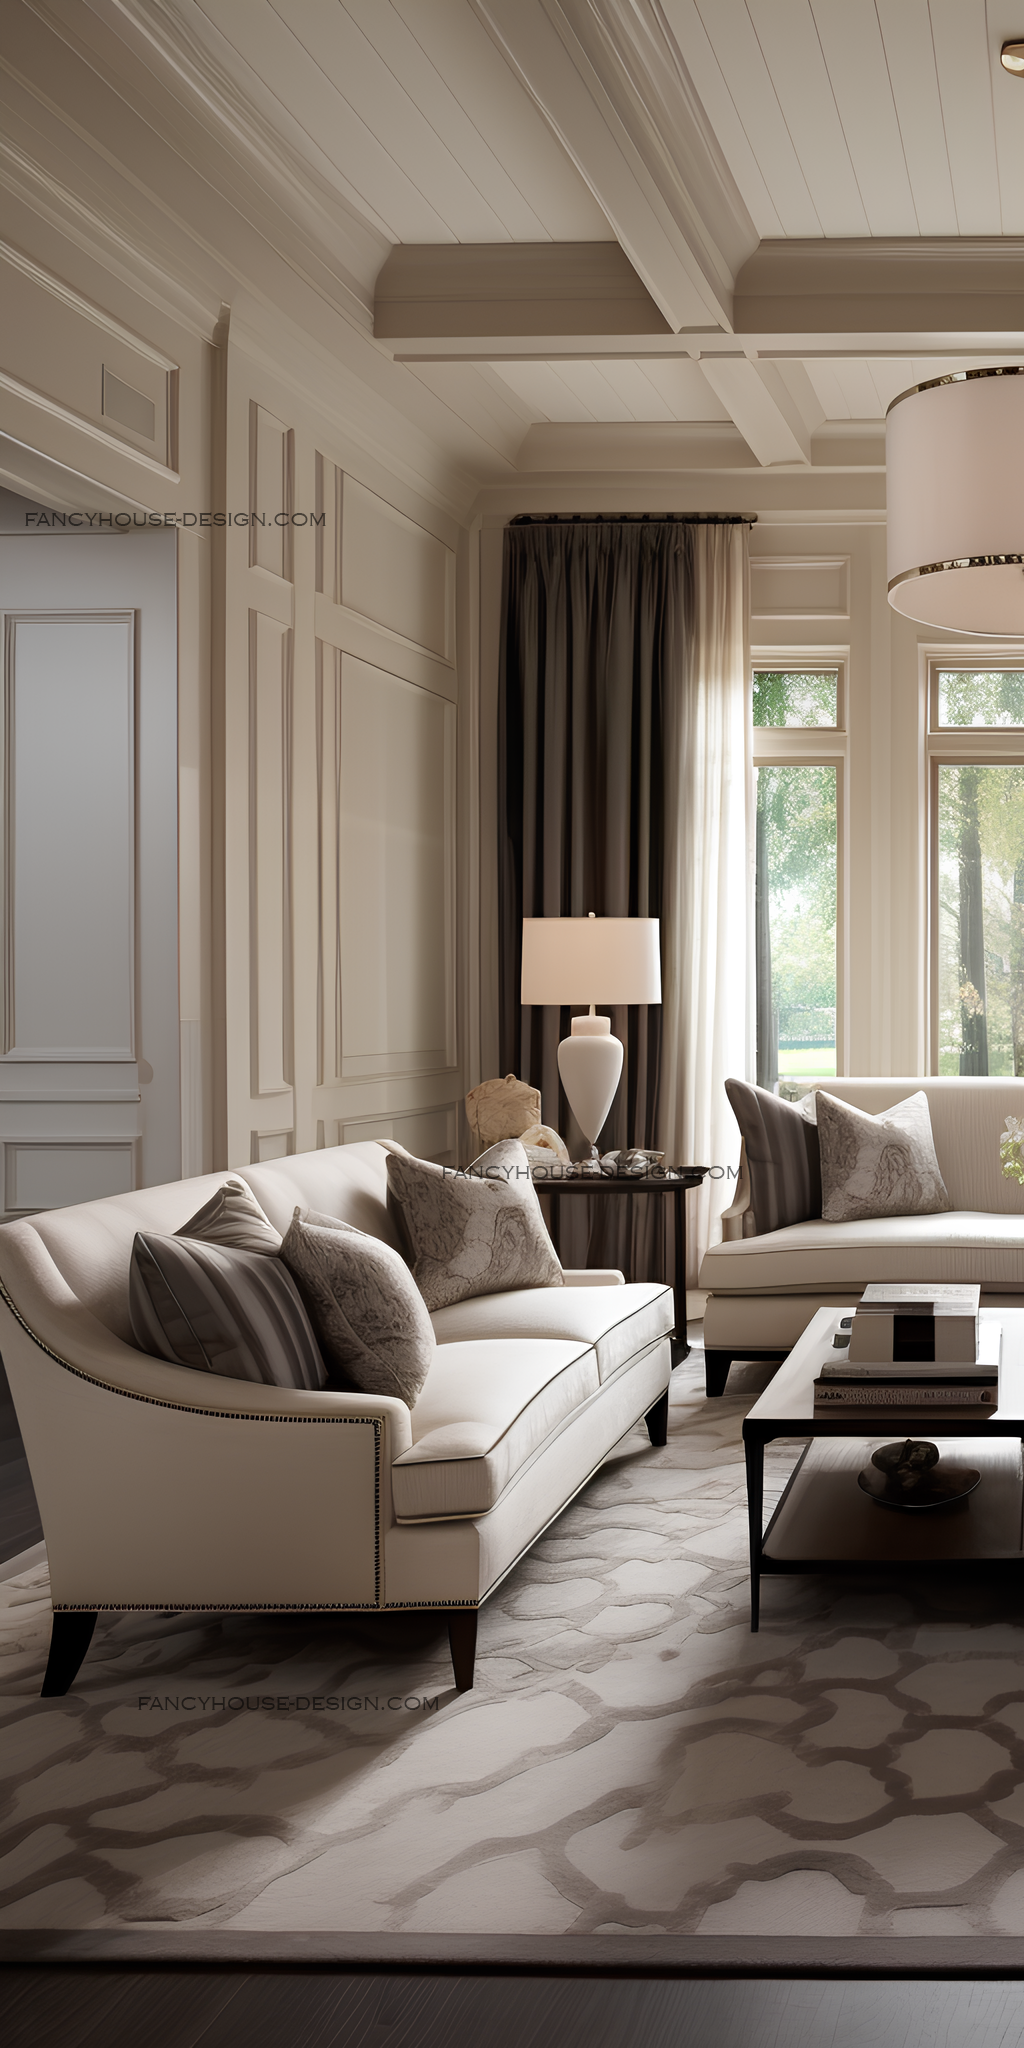 The Elegance of Formal Living Room Furniture